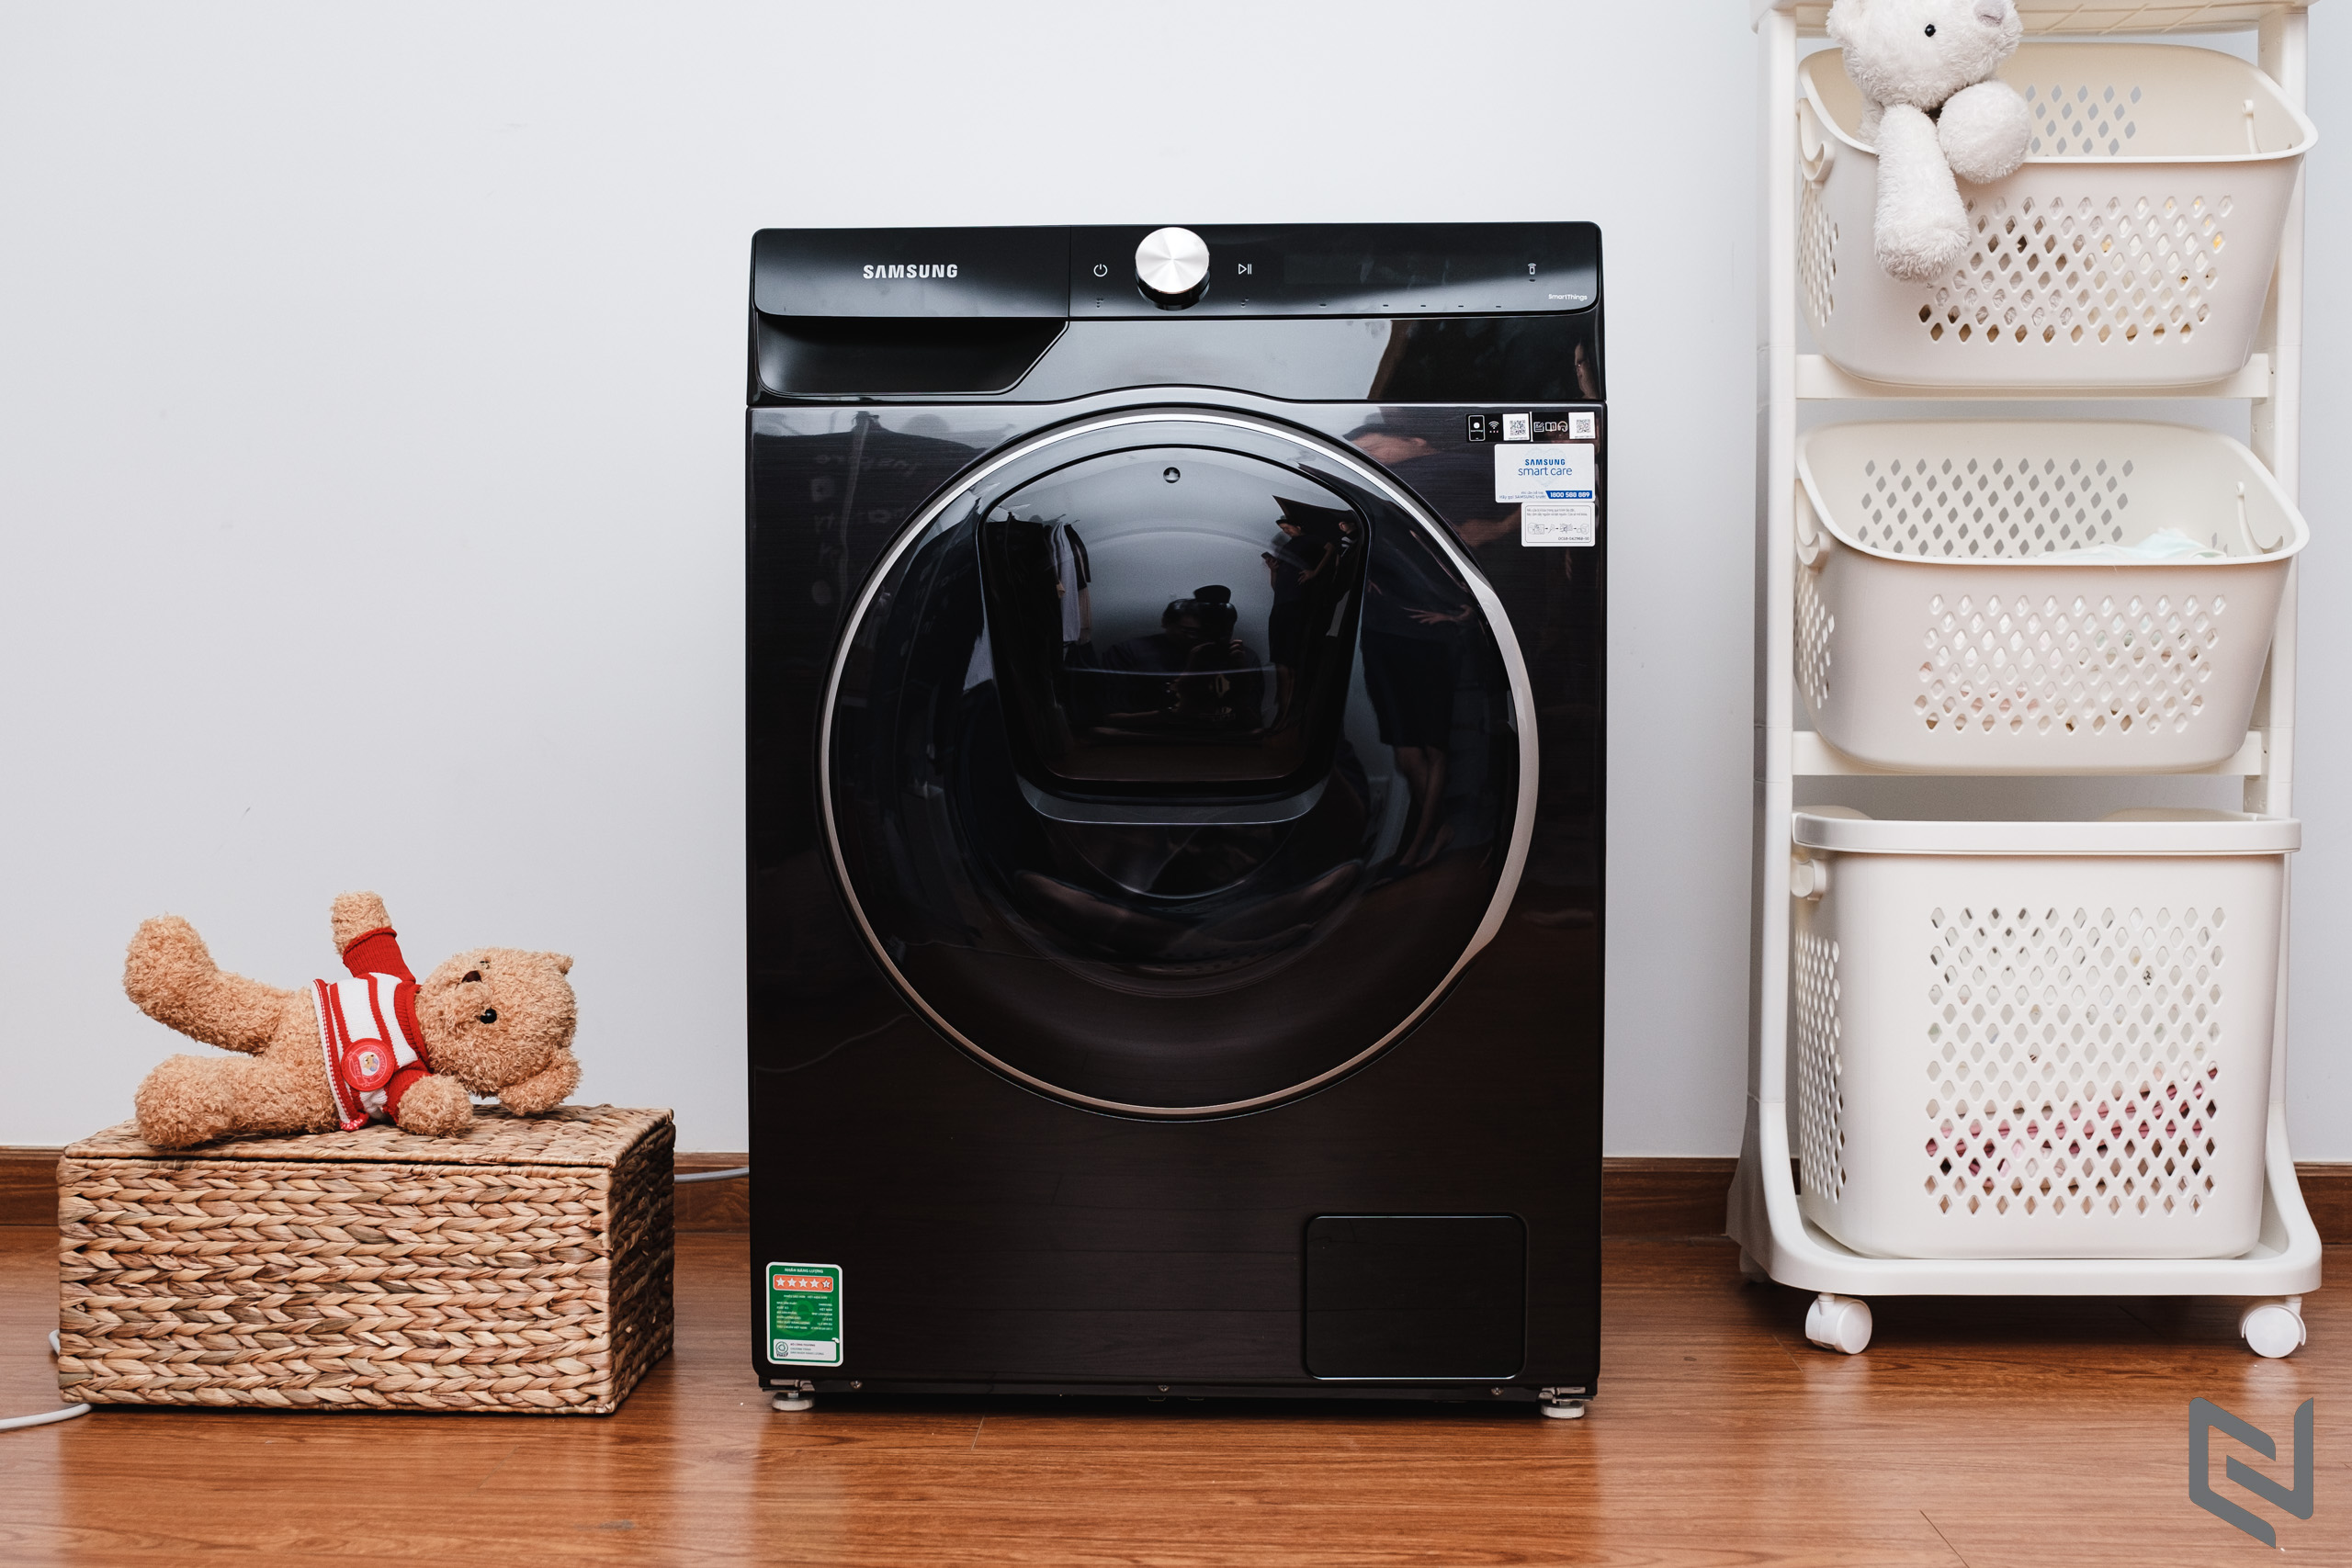 Đánh giá Máy giặt thông minh Samsung AI Ecobubble 12kg: Hoàn thiện cao cấp, nhiều công nghệ giúp giặt sạch và tiết kiệm hơn